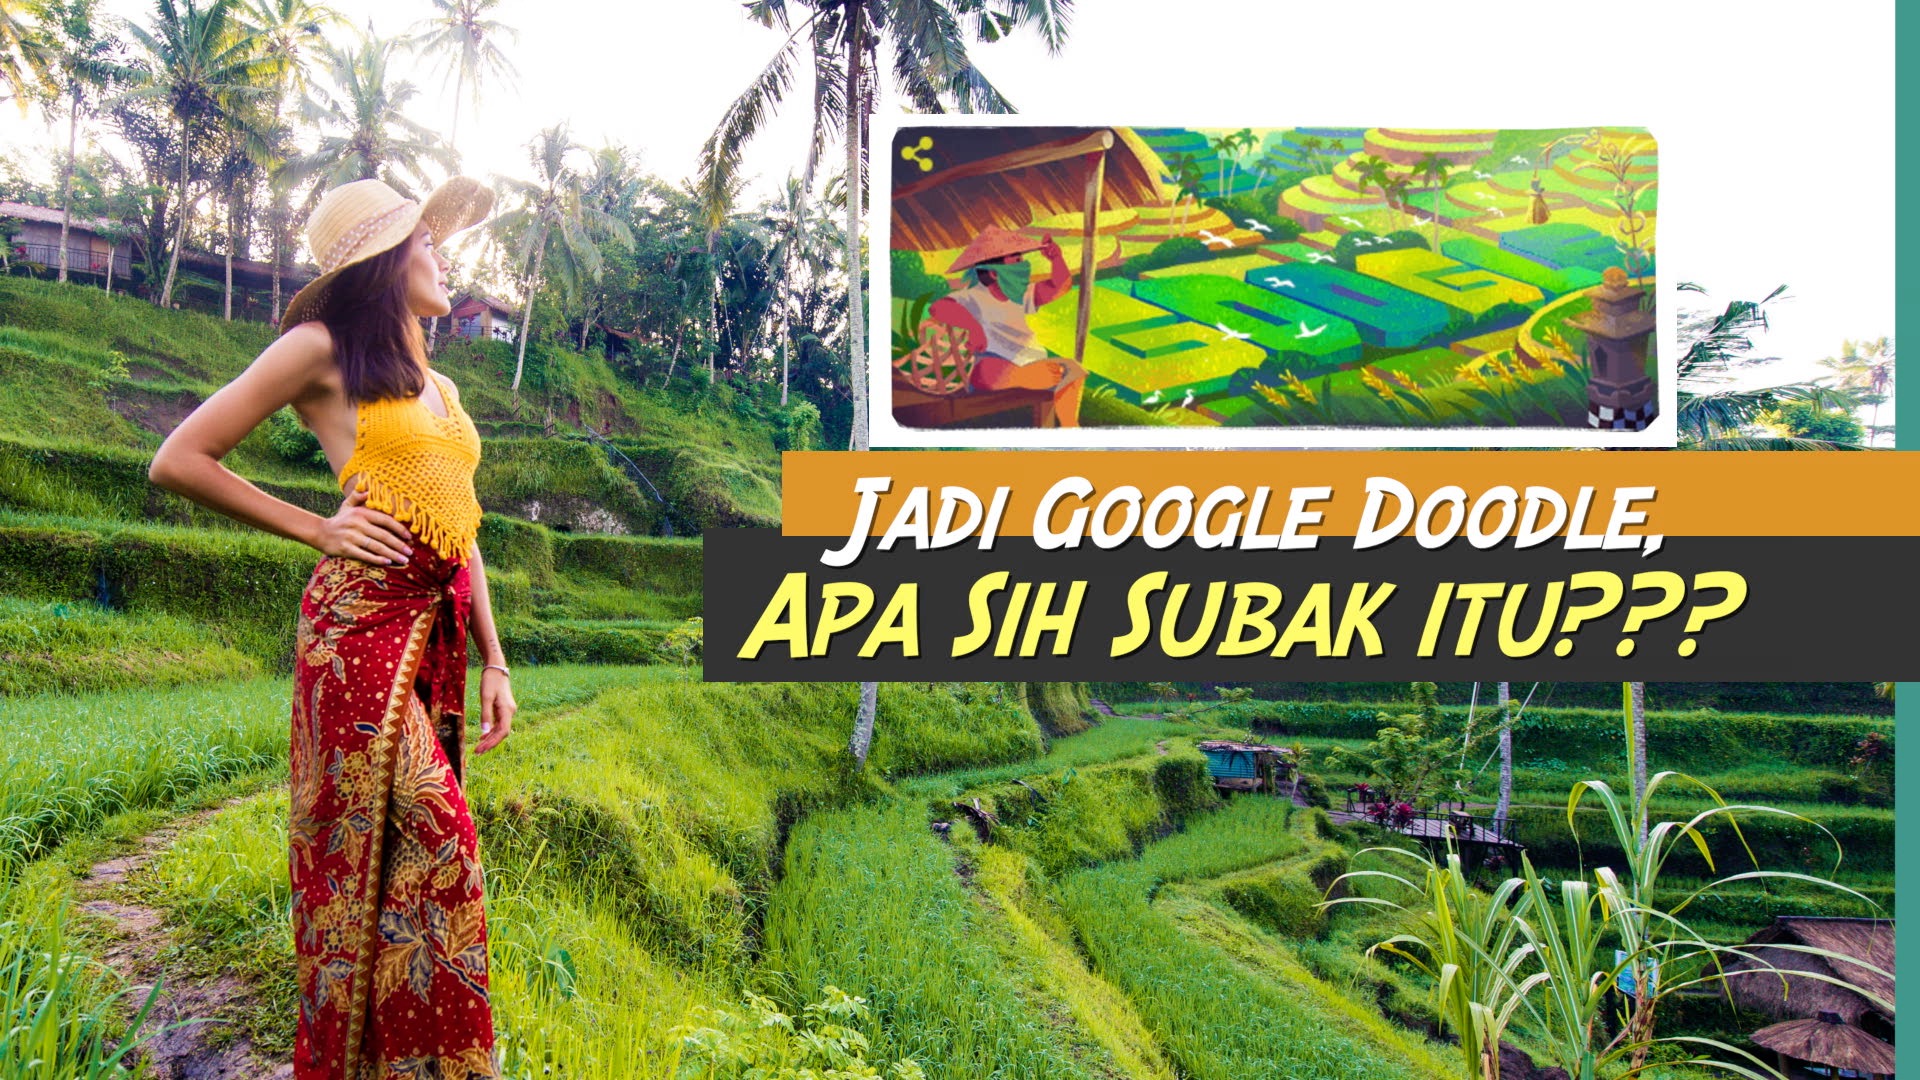 Mengenal Subak, Warisan Budaya Dunia di Bali yang Jadi Google Doodle